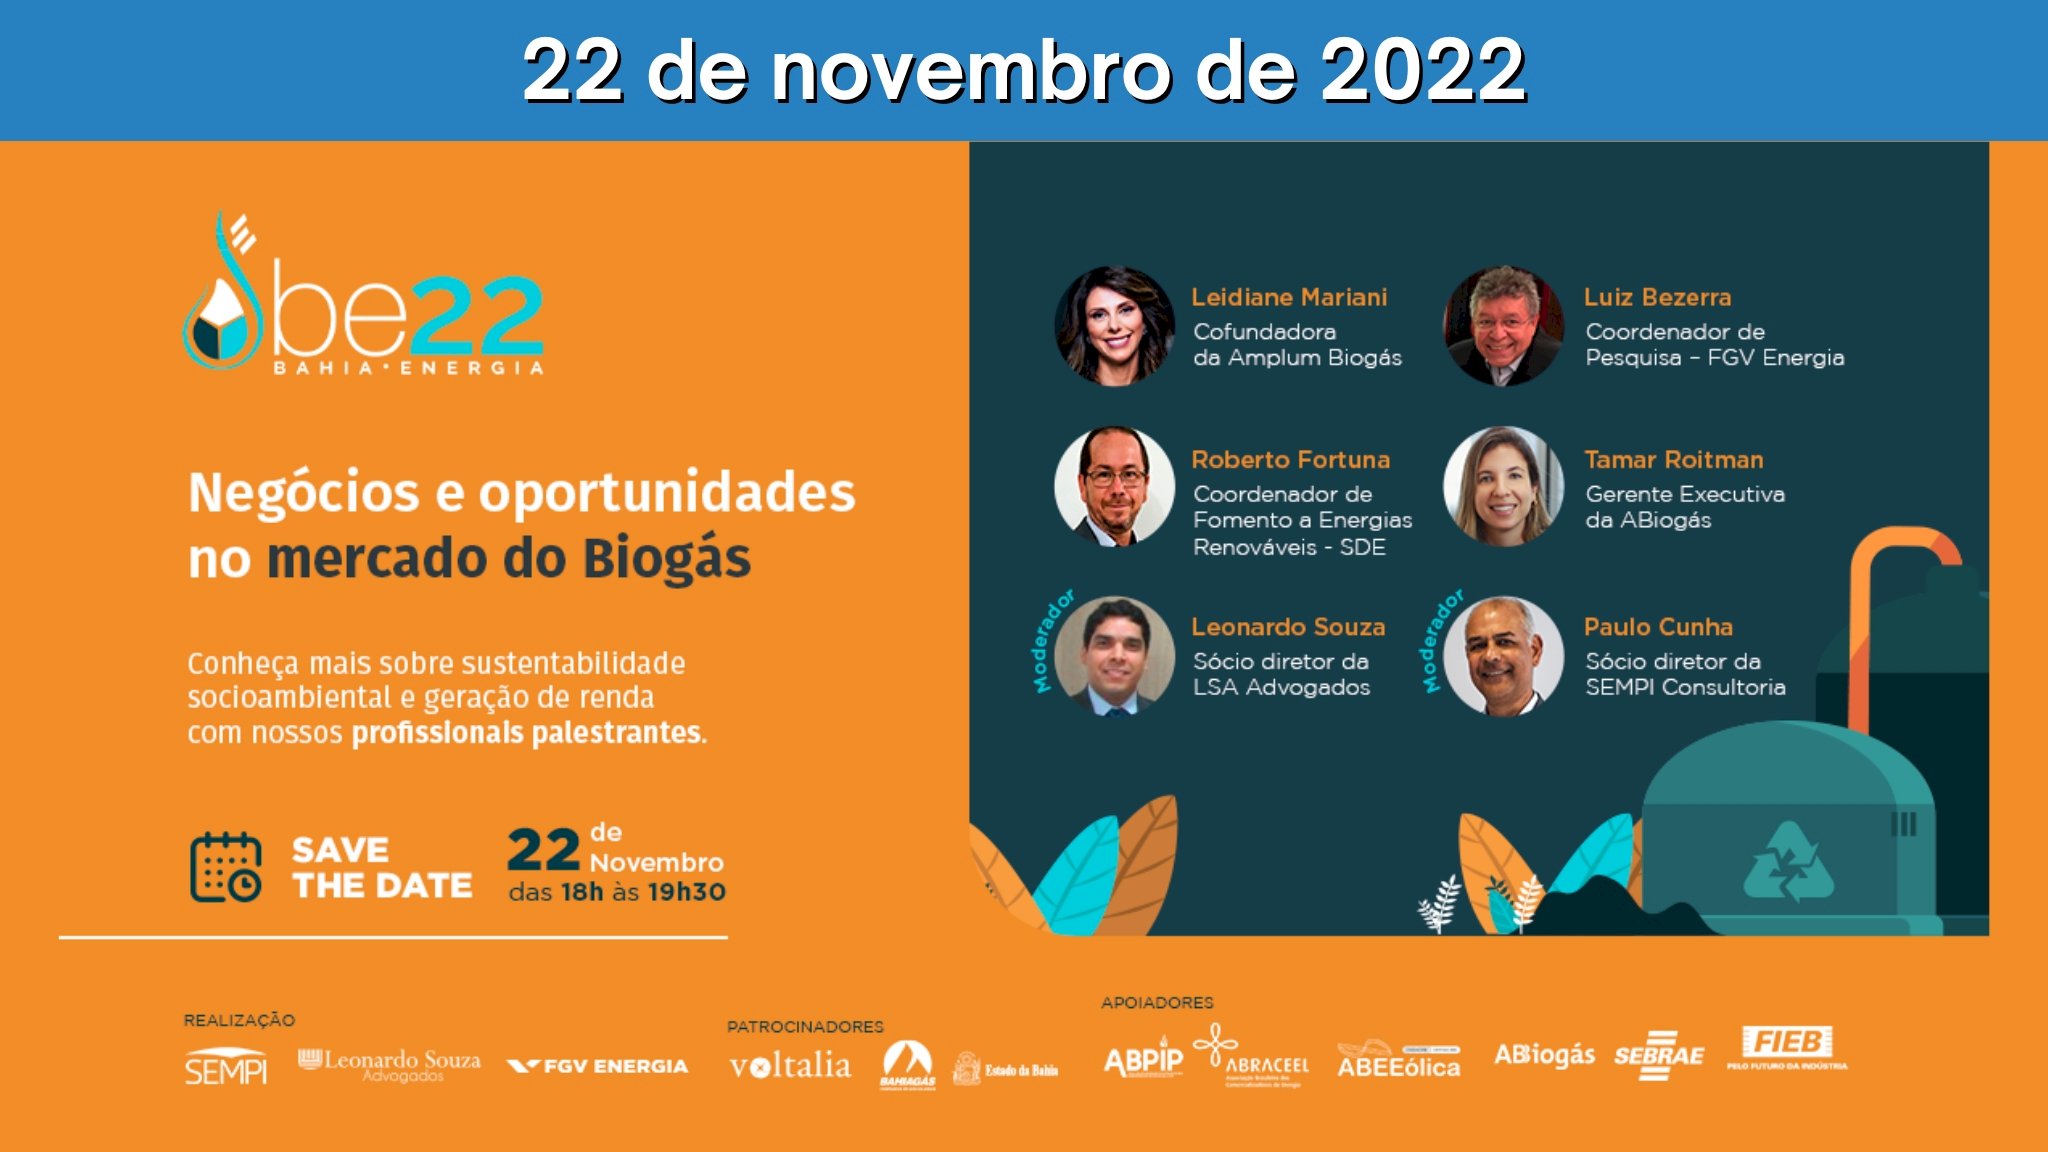 Bahia Energia 22 - Negócios e oportunidades no mercado de Biogás